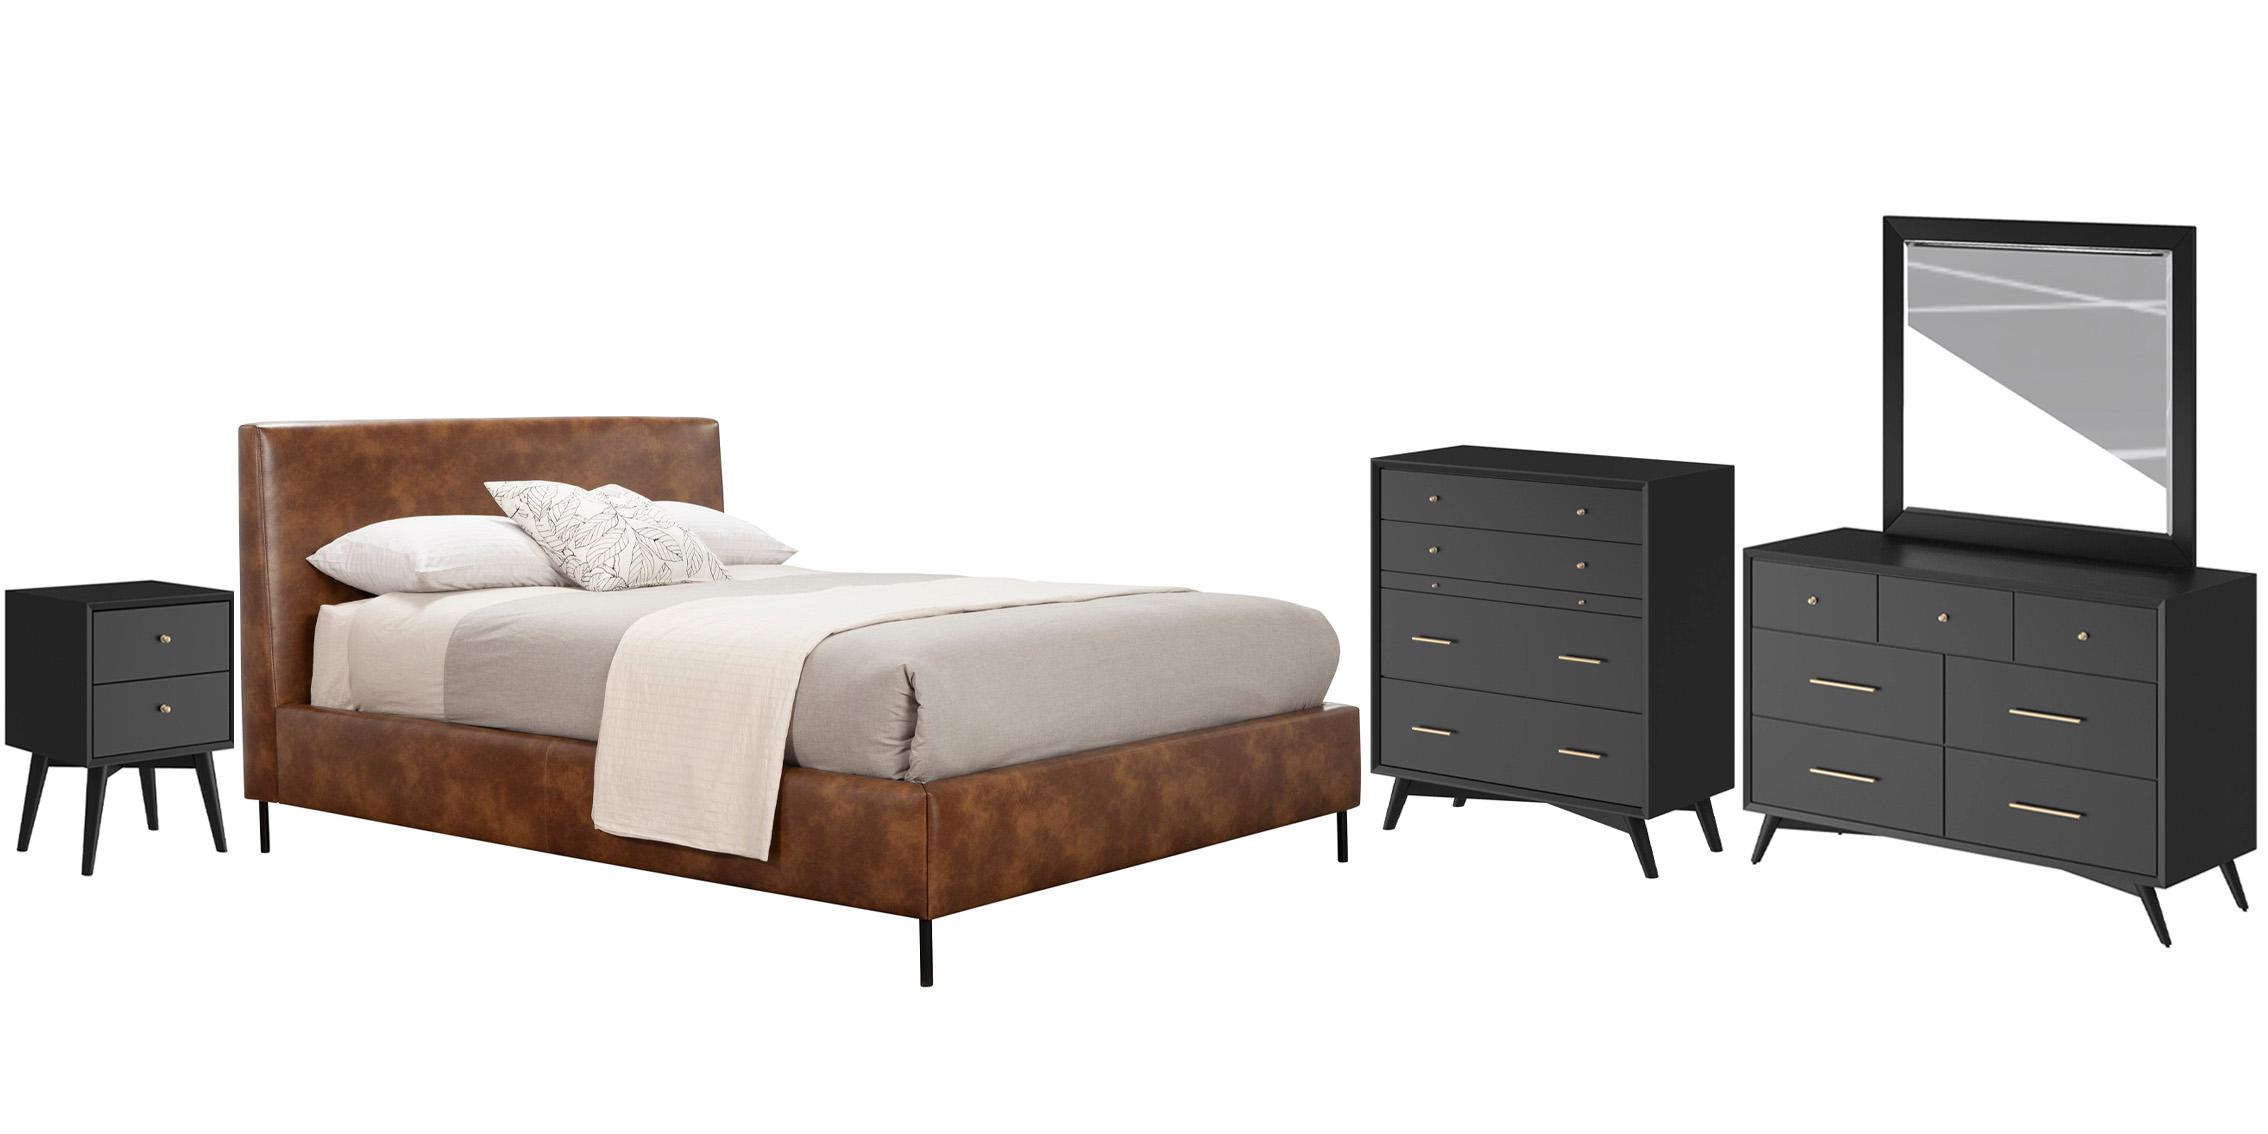 Modern, Rustic Platform Bedroom Set SOPHIA/FLYNN 6902EK-BRN-Set-5-BLK in Brown, Black Faux Leather